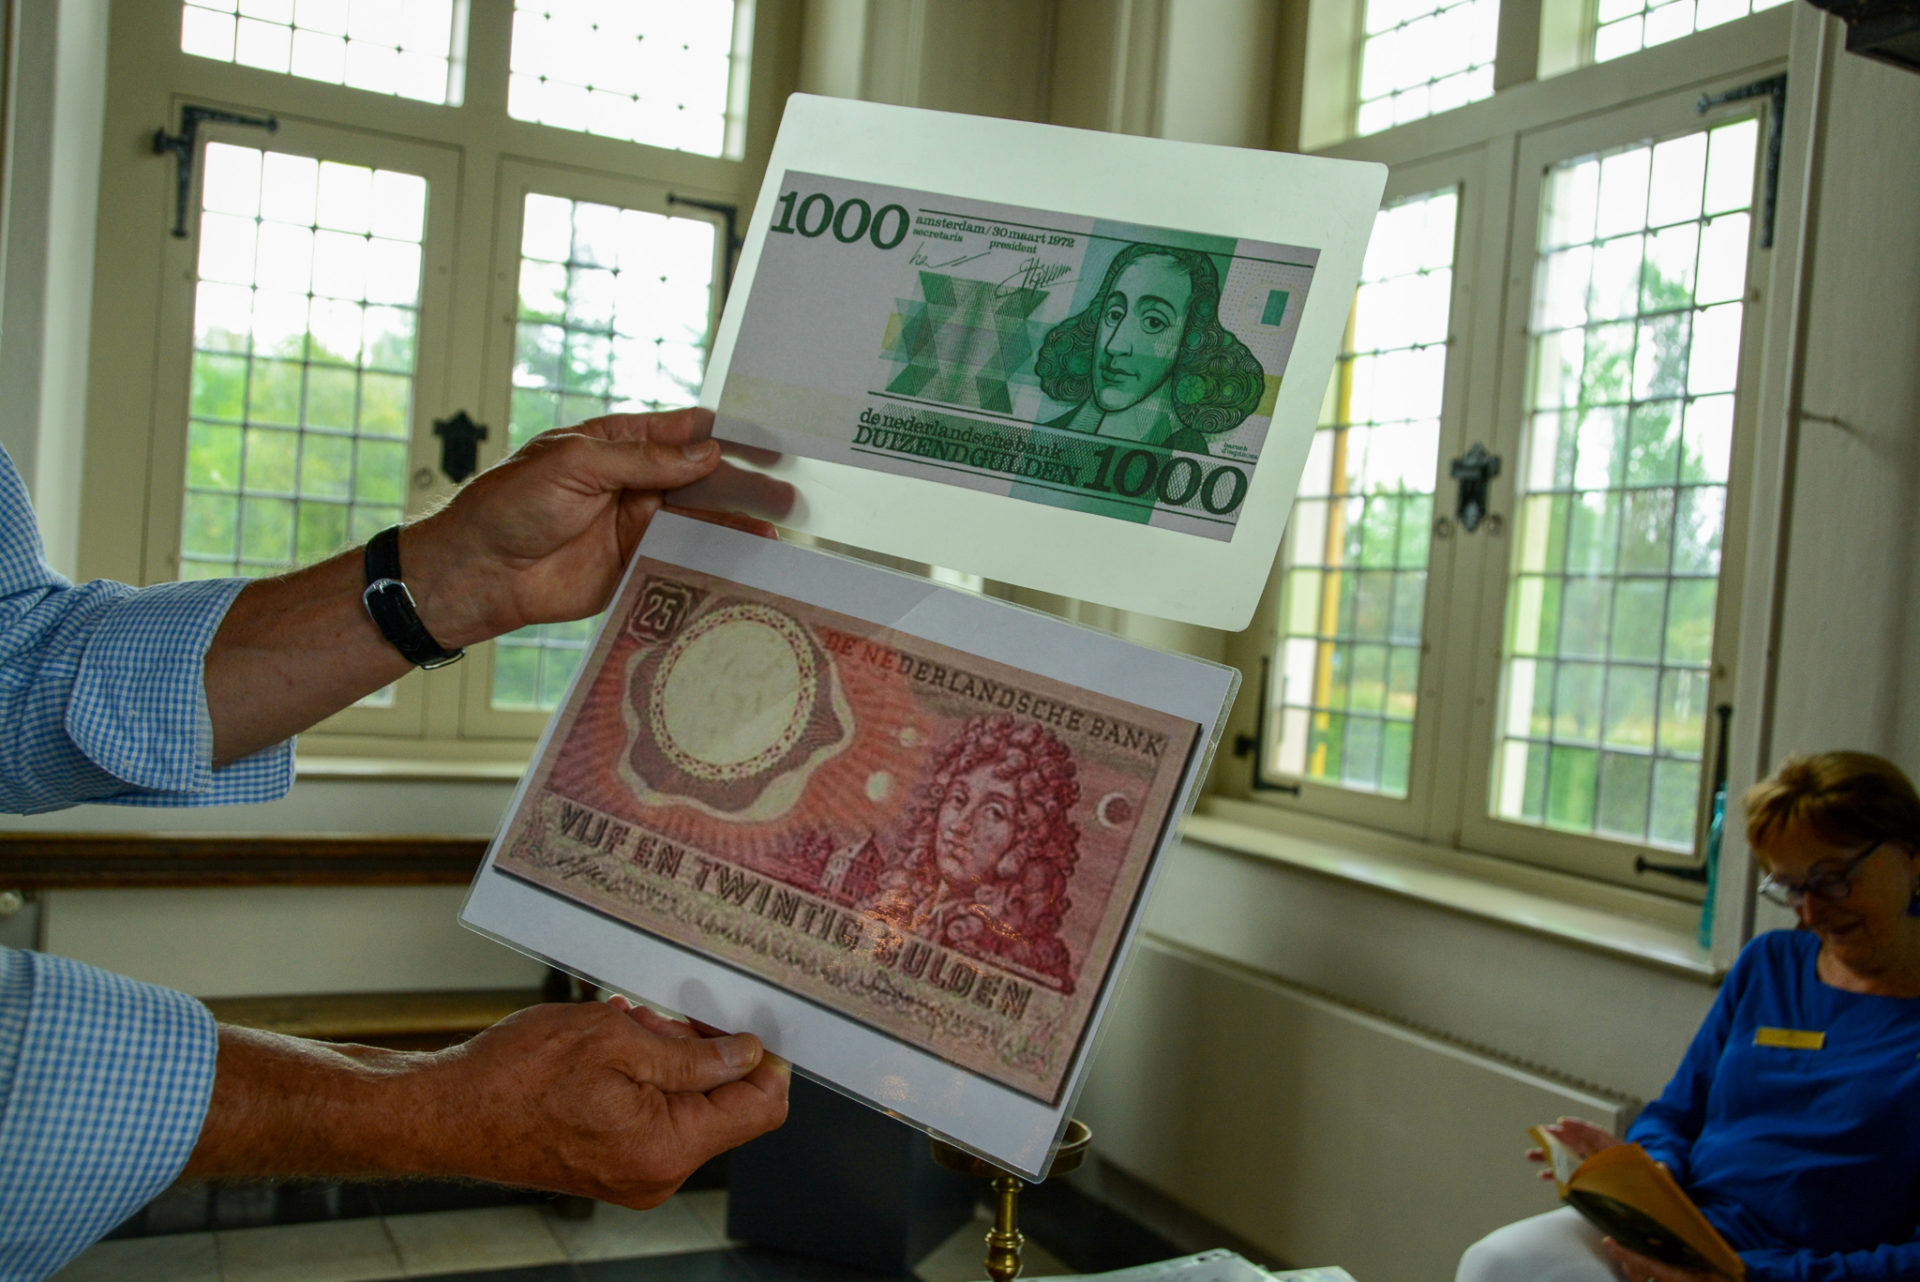 Das Konterfei von Constantijn und Christiaan Huygens auf niederländischen Geldscheinen